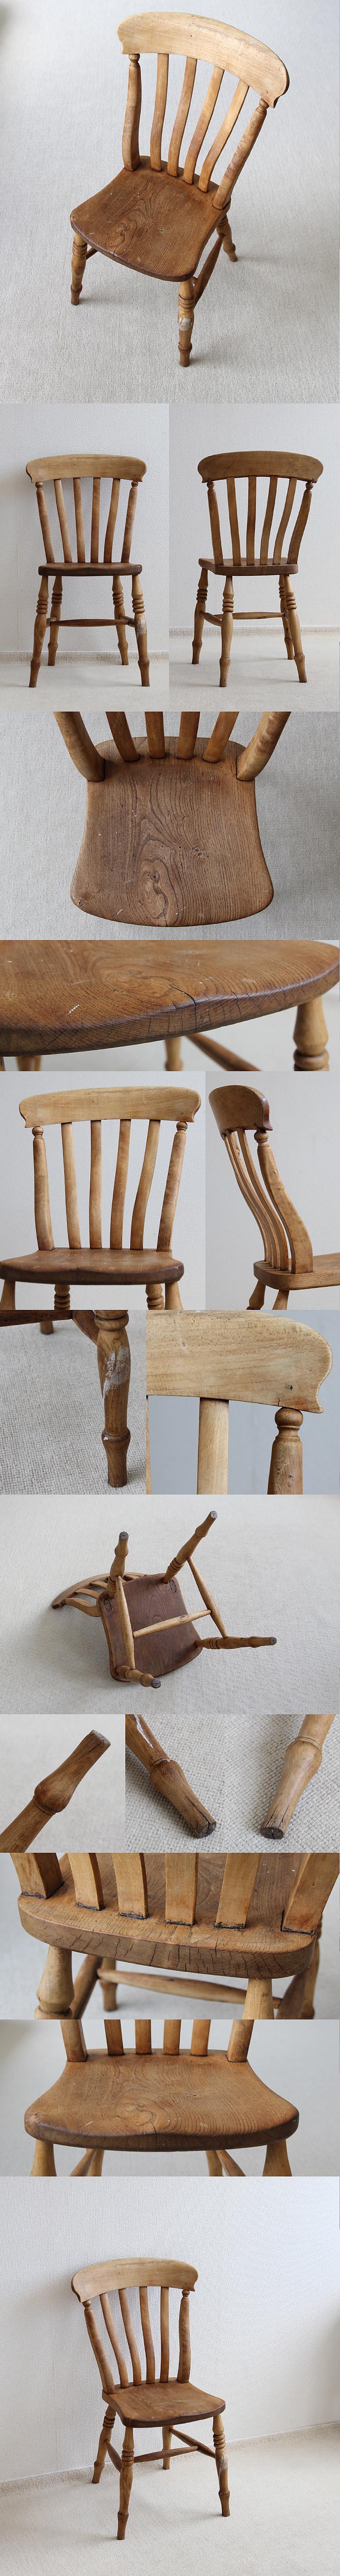 イギリス アンティーク ラスバックチェア 木製椅子 無垢材 英国 家具「キッチンチェア」V-561